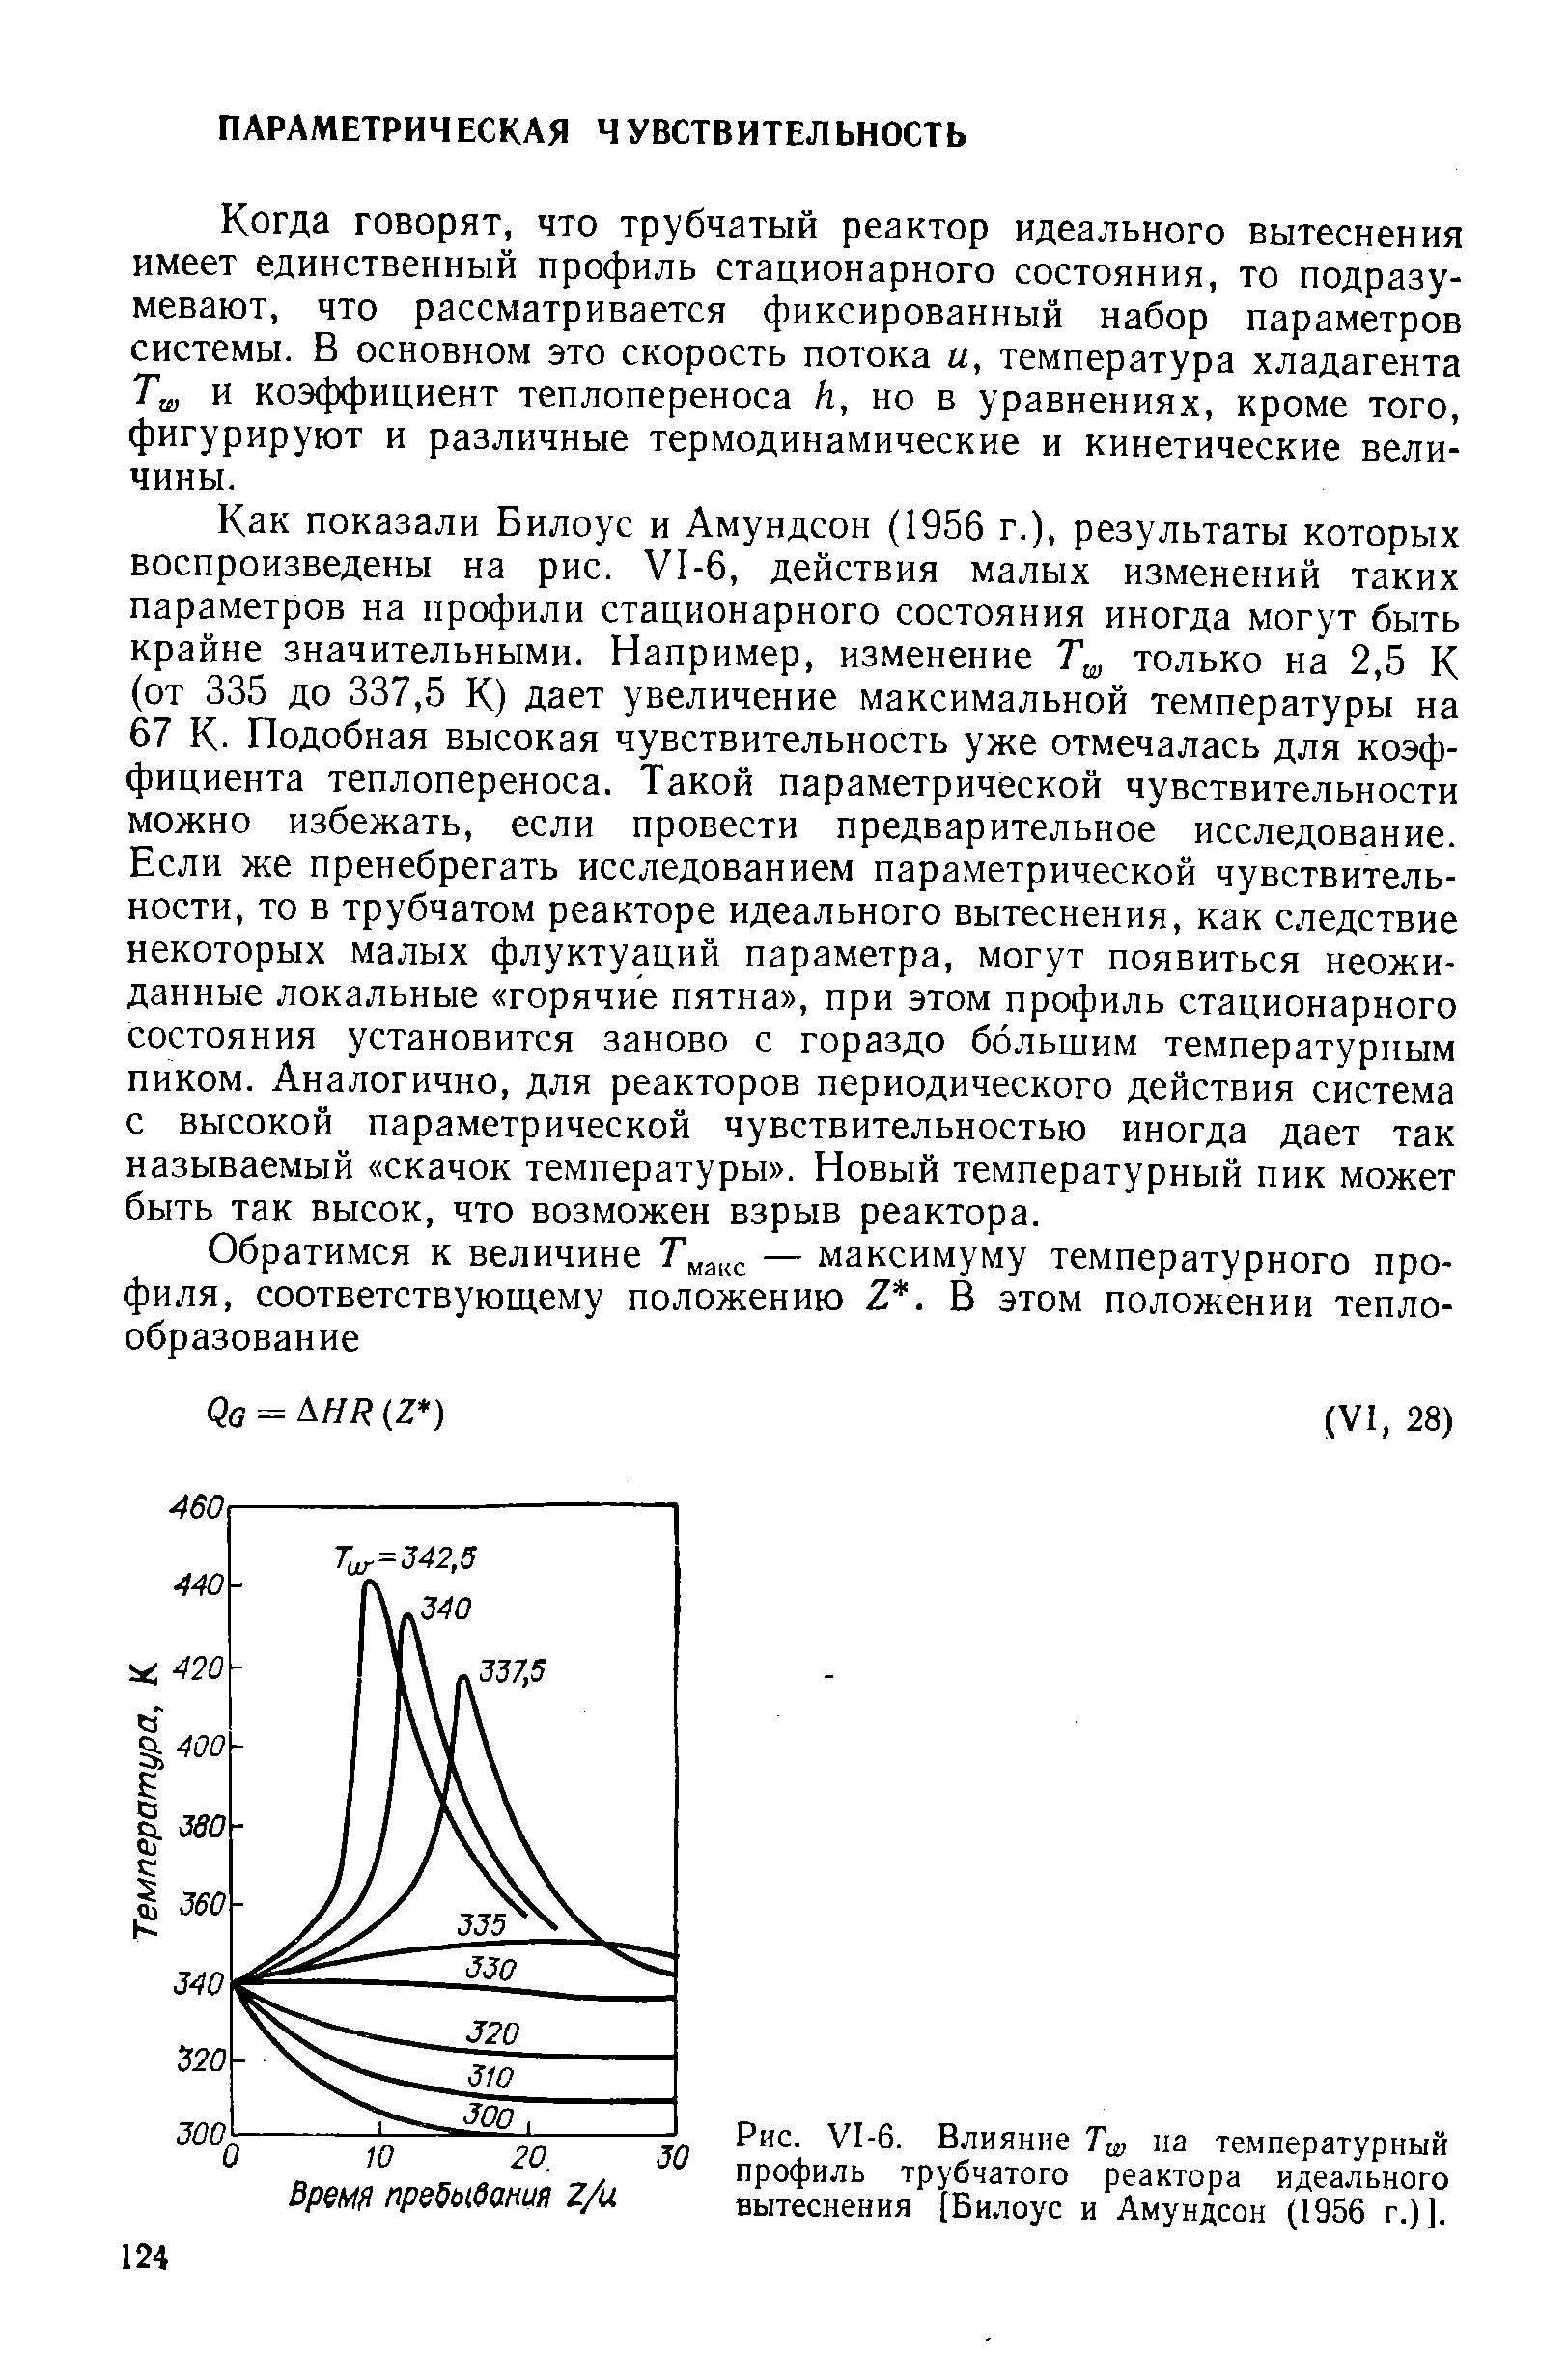 Как показали Билоус и Амундсон (1956 г.), результаты которых воспроизведены на рис. 1-6, действия малых изменений таких параметров на профили стационарного состояния иногда могут быть крайне значительными. Например, изменение только на 2,5 К (от 335 до 337,5 К) дает увеличение максимальной температуры на 67 К. Подобная высокая чувствительность уже отмечалась для коэффициента теплопереноса. Такой параметрической чувствительности можно избежать, если провести предварительное исследование. Если же пренебрегать исследованием параметрической чувствительности, то в трубчатом реакторе идеального вытеснения, как следствие некоторых малых флуктуаций параметра, могут появиться неожиданные локальные горячие пятна , при этом профиль стационарного состояния установится заново с гораздо большим температурным пиком. Аналогично, для реакторов периодического действия система с высокой параметрической чувствительностью иногда дает так называемый скачок температуры . Новый температурный пик может быть так высок, что возможен взрыв реактора.